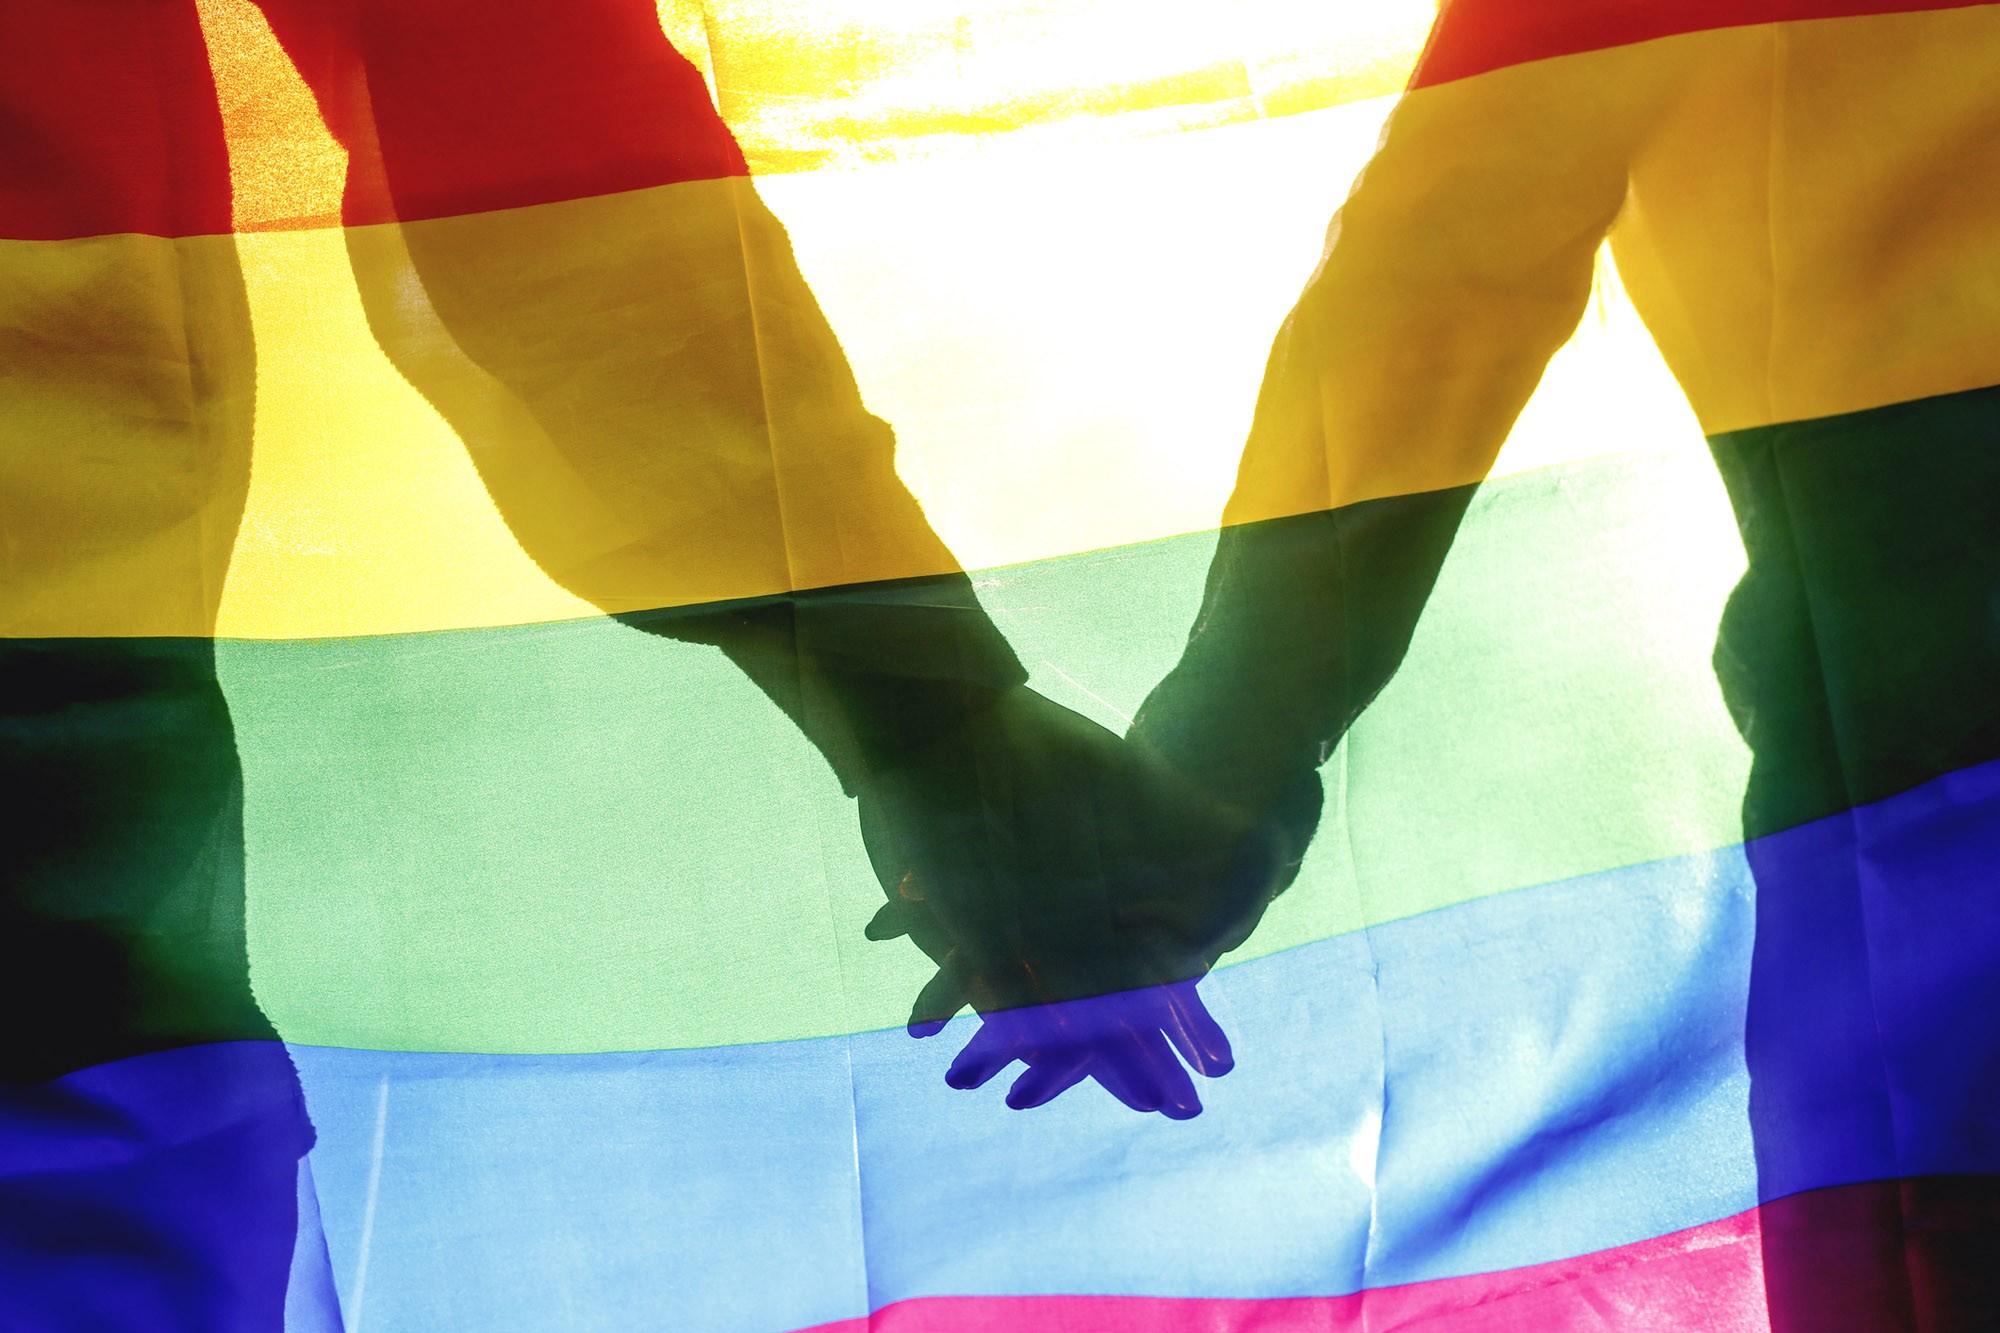 В Таиланде законодатели поддержали признание однополых браков